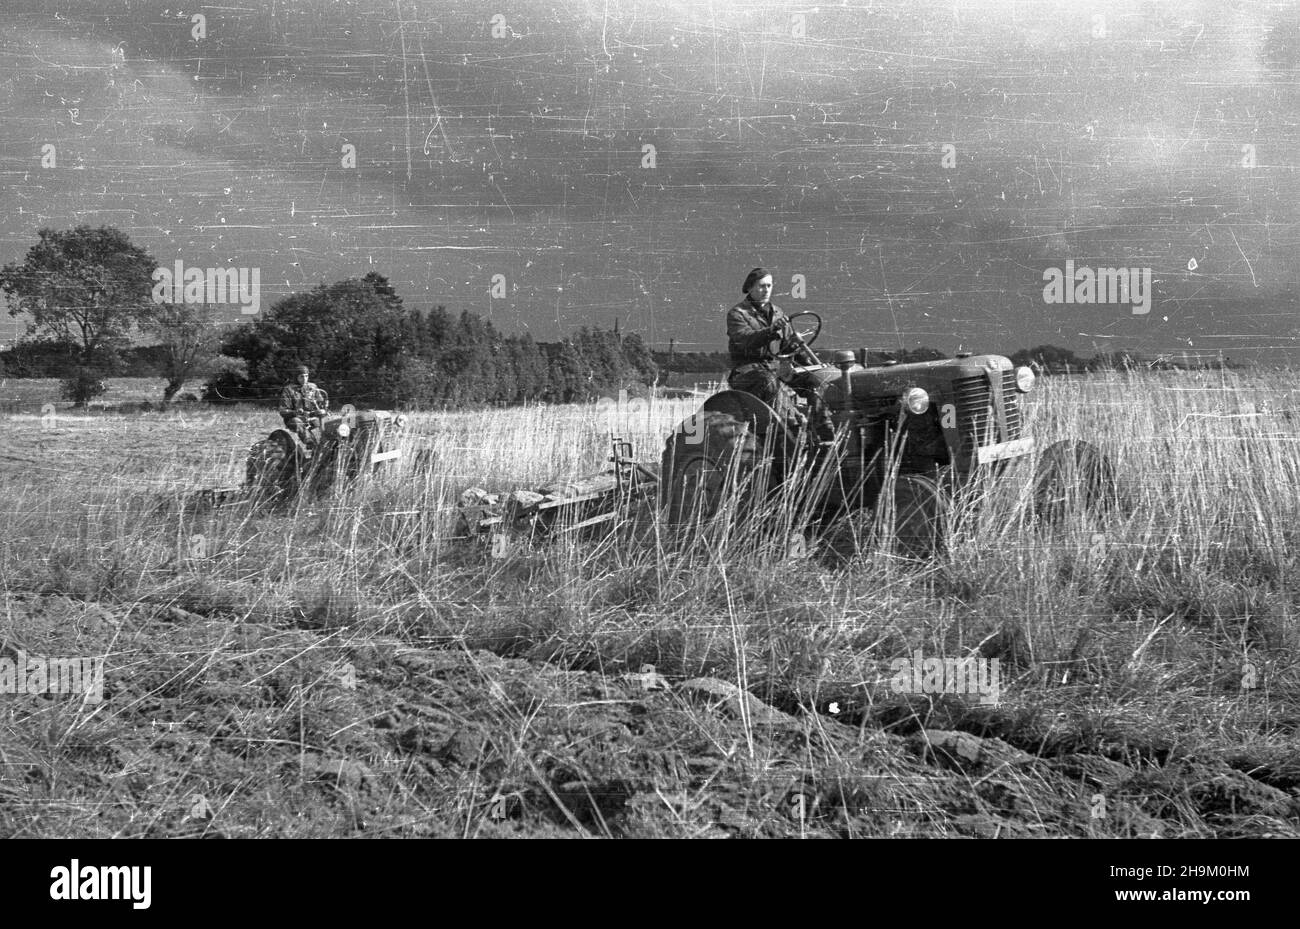 Warszyn, 1948-09. Brygada Traktorowa Zwi¹zku M³odzie¿y Polskiej pomaga w pracach polowych w maj¹tku Pañstwowych Nieruchomoœci Ziemskich (PNZ) w Warszynie. Nz. traktorzyœci na czeskich traktorach Zetor 25. msa  PAP    Dok³adny dzieñ wydarzenia nieustalony.      Warszyn, Sept. 1948. The Polish Youth Union Tractor Brigade helping in field work at the State Landed Property (PNZ) estate in Warszyn. Pictured: tractor drivers on Czech Zetor 25 tractors.  msa  PAP Stock Photo